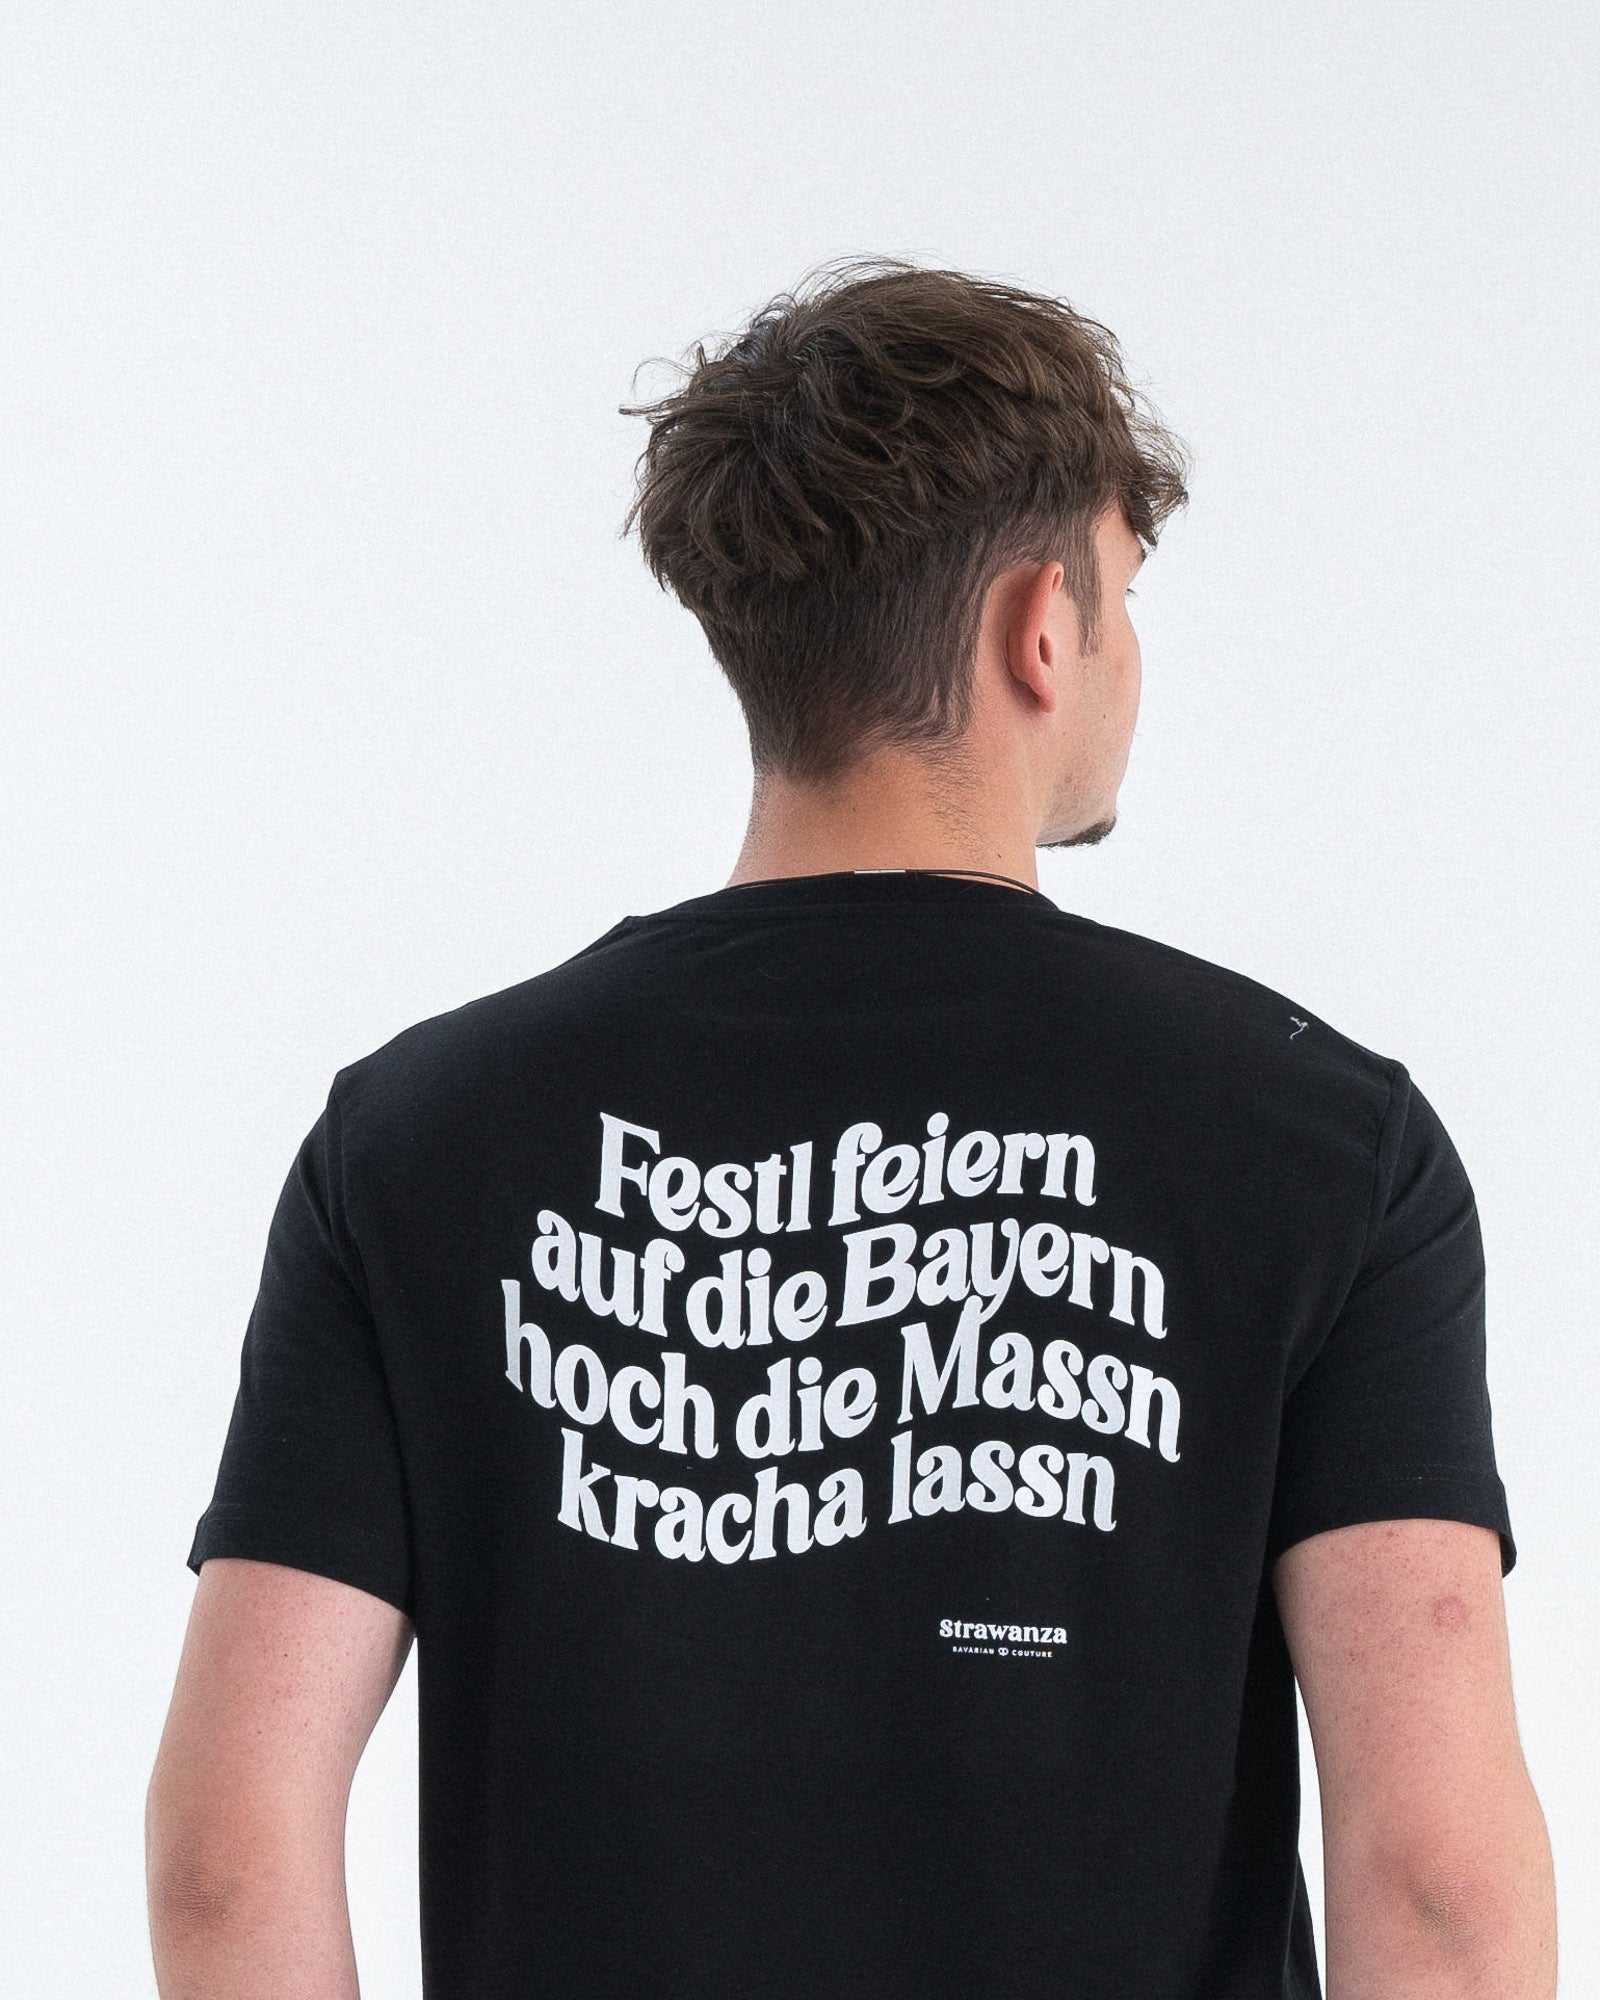 Ein männliches Model trägt ein schwarzes T-Shirt mit einem in weiß gedruckten "Festl feiern auf die Bayern hoch die Massn kracha lassn" Schriftzug. 